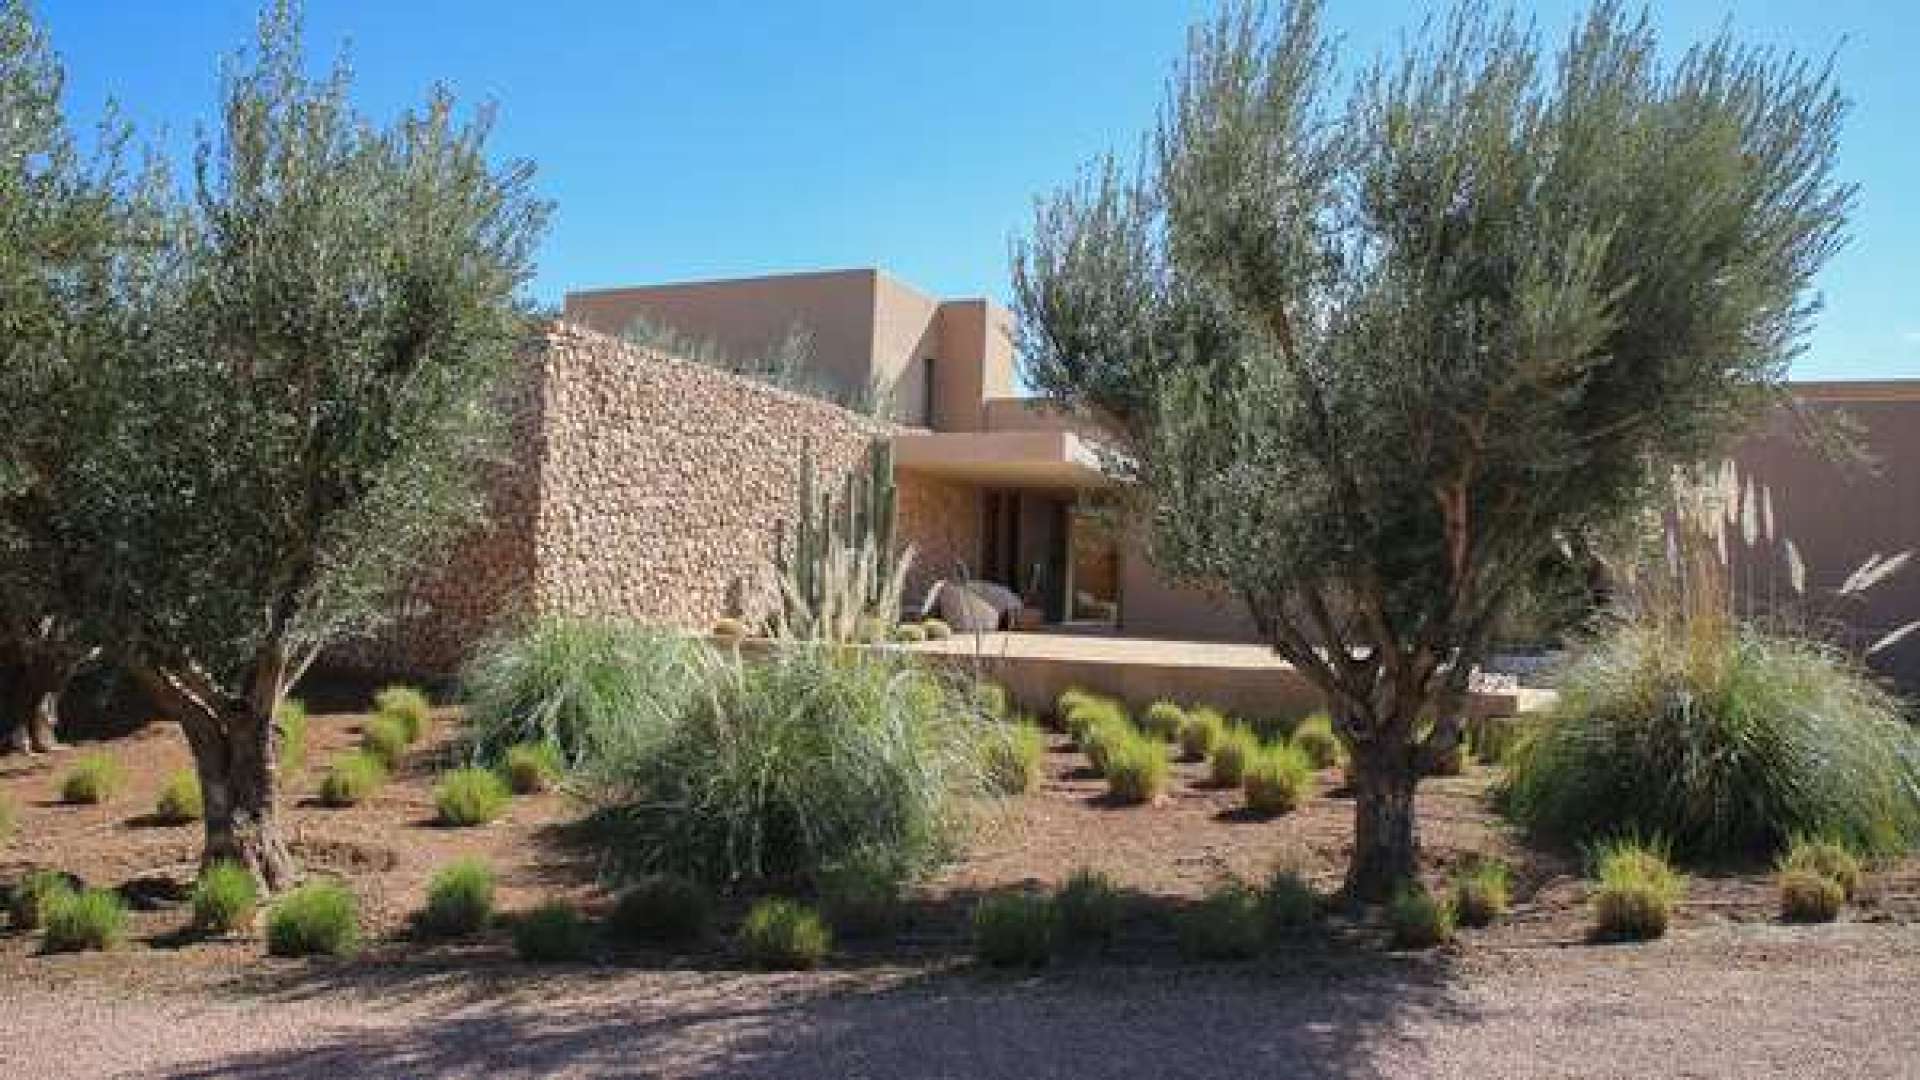 Location de vacances,Villa,Somptueuse villa 6ch dans la Palmeraie avec piscine couverte,Marrakech,Palmeraie